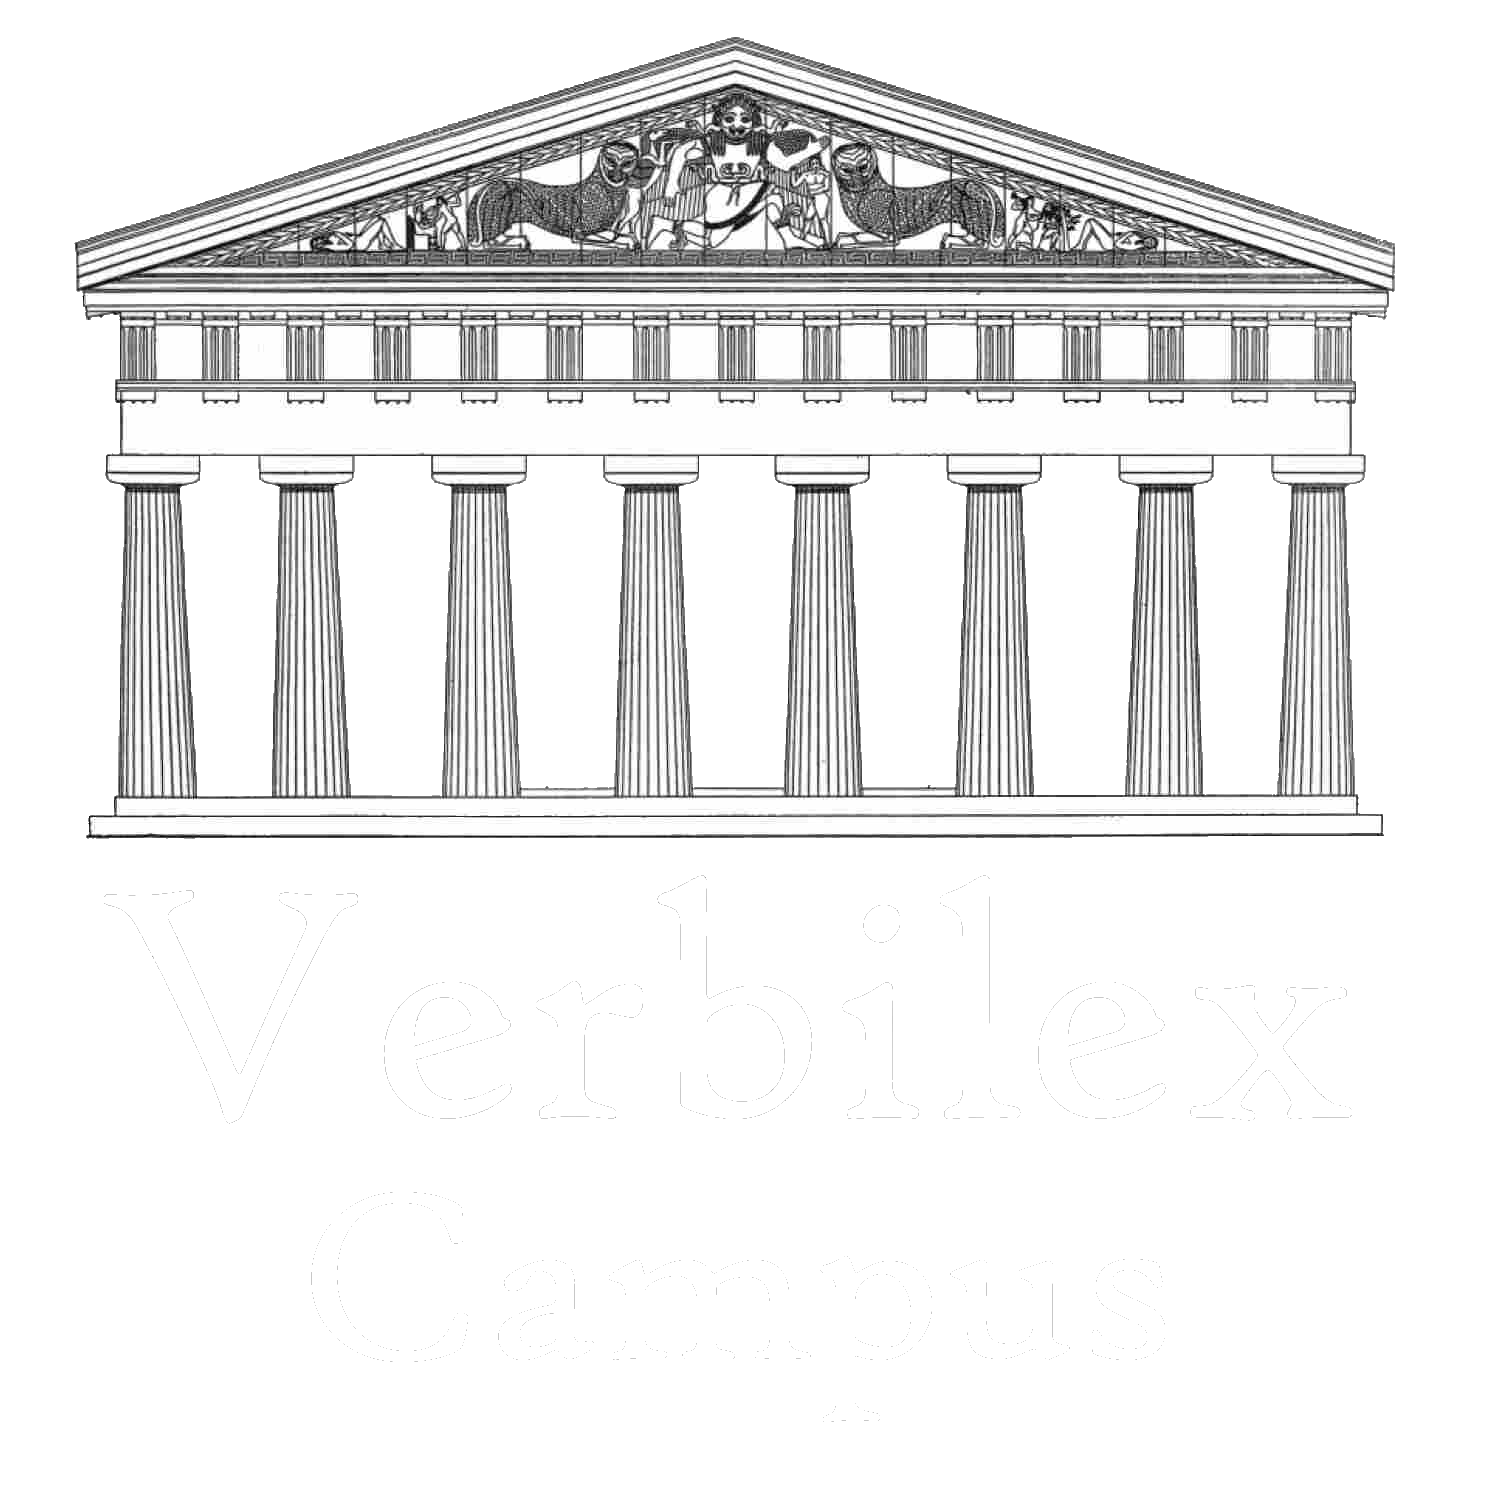 VerbilexCampus